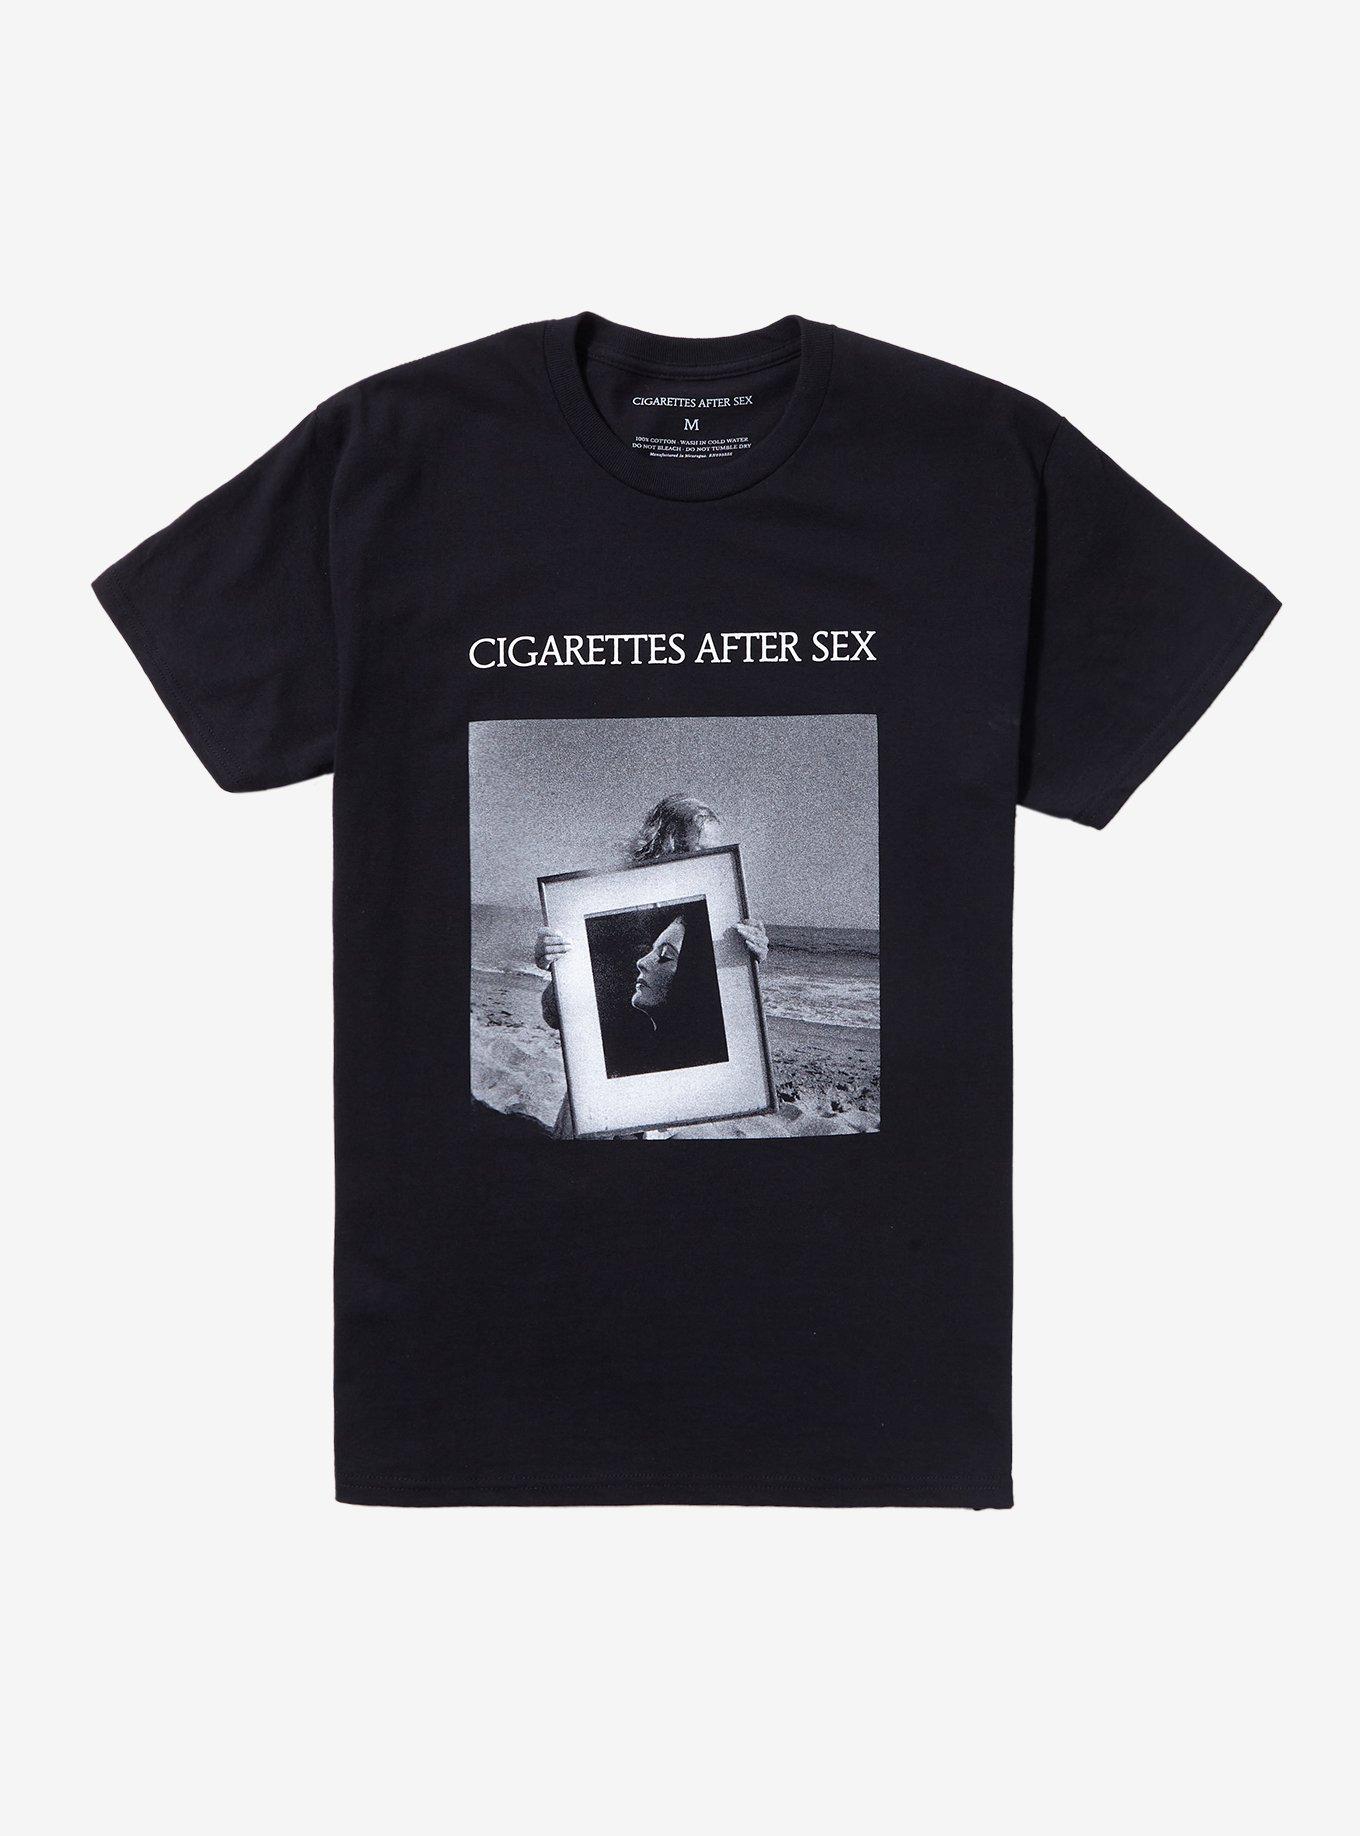 Cigarettes After Sex Beach Photo T-Shirt, BLACK, hi-res